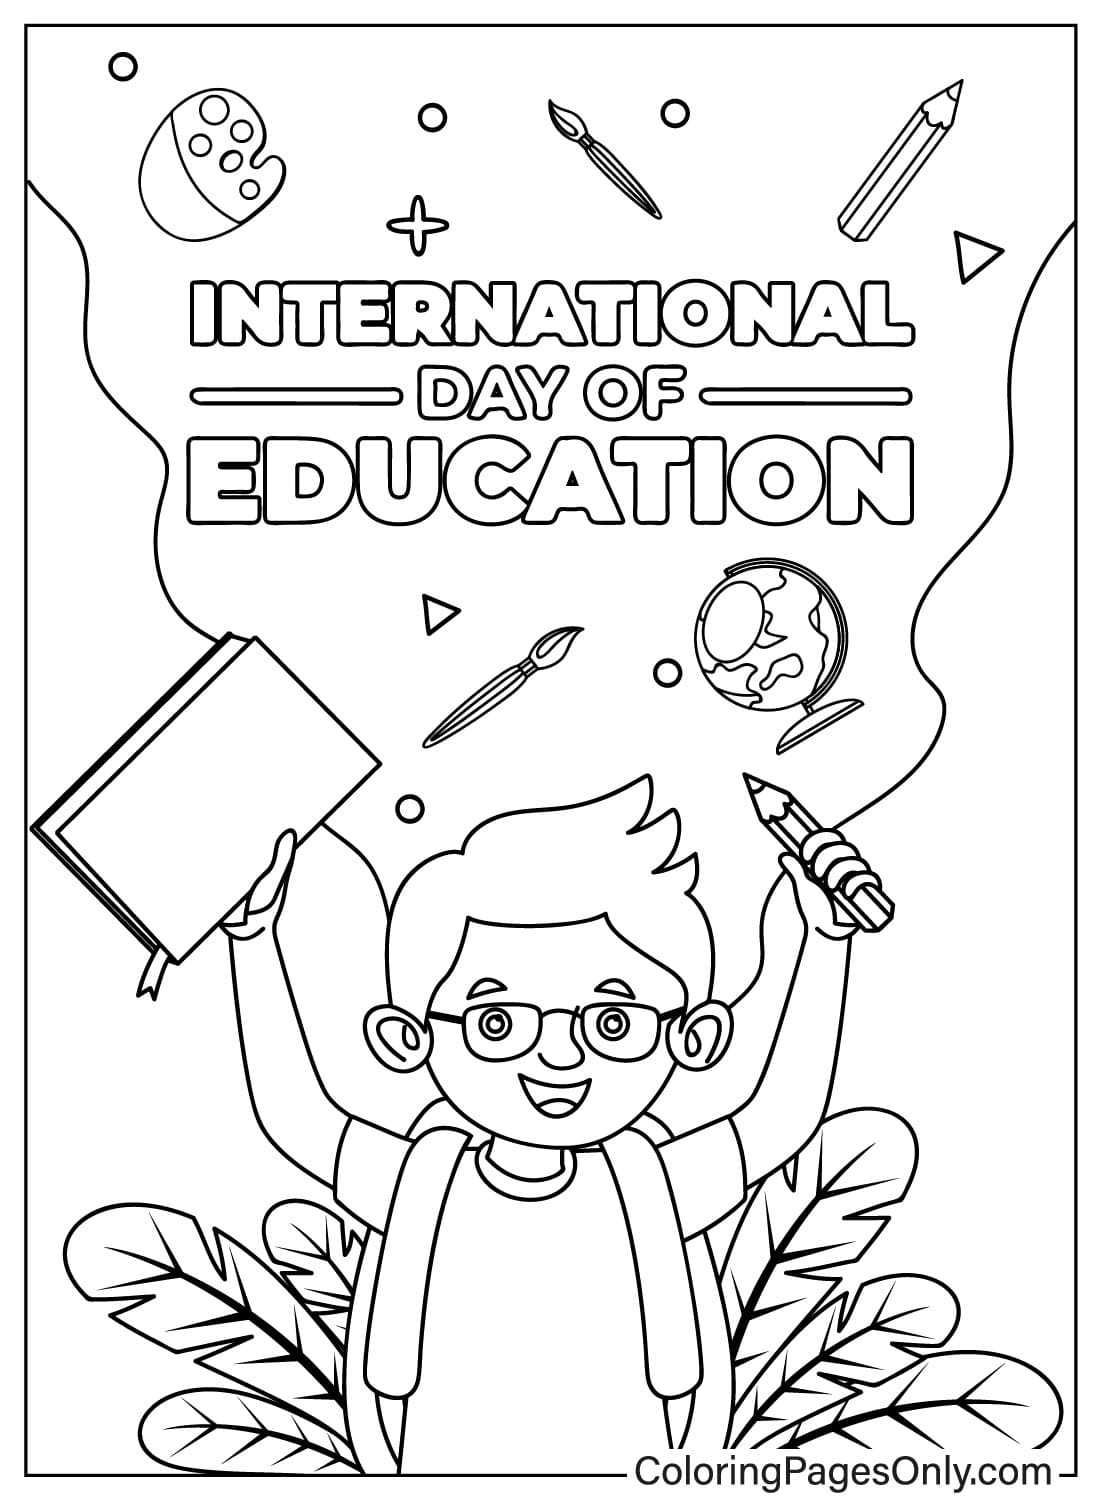 صفحة تلوين اليوم العالمي للتعليم خالية من اليوم العالمي للتعليم